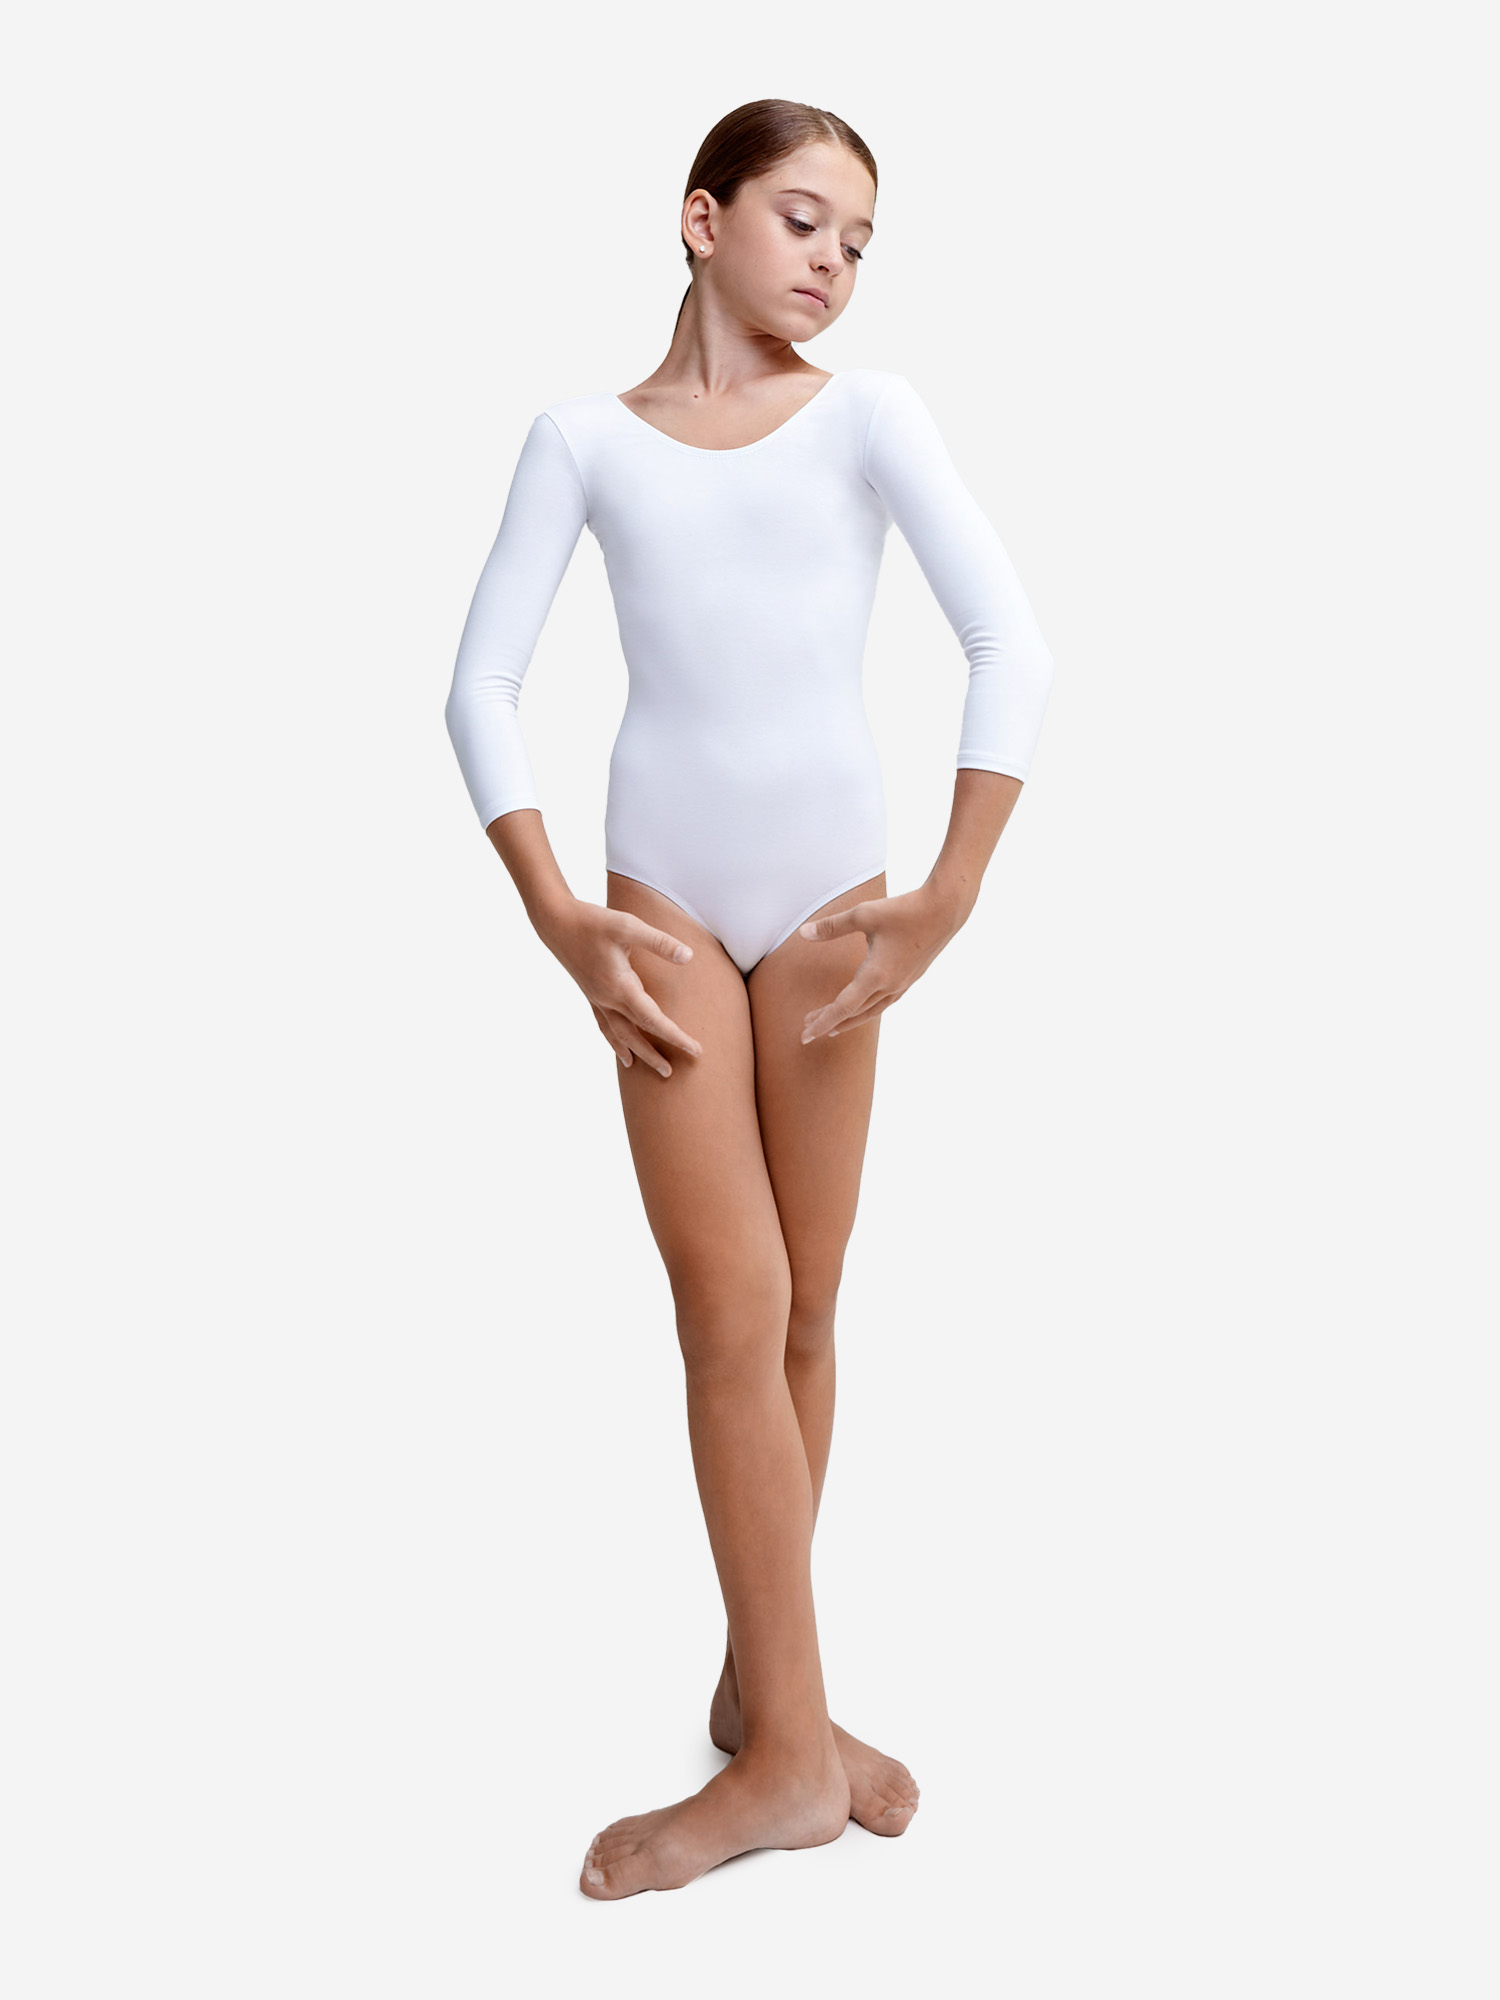 Купальник гимнастический Belkina без юбки для танцев и тренировок, Белый купальник гимнастический belkina с юбкой для танцев и тренировок розовый